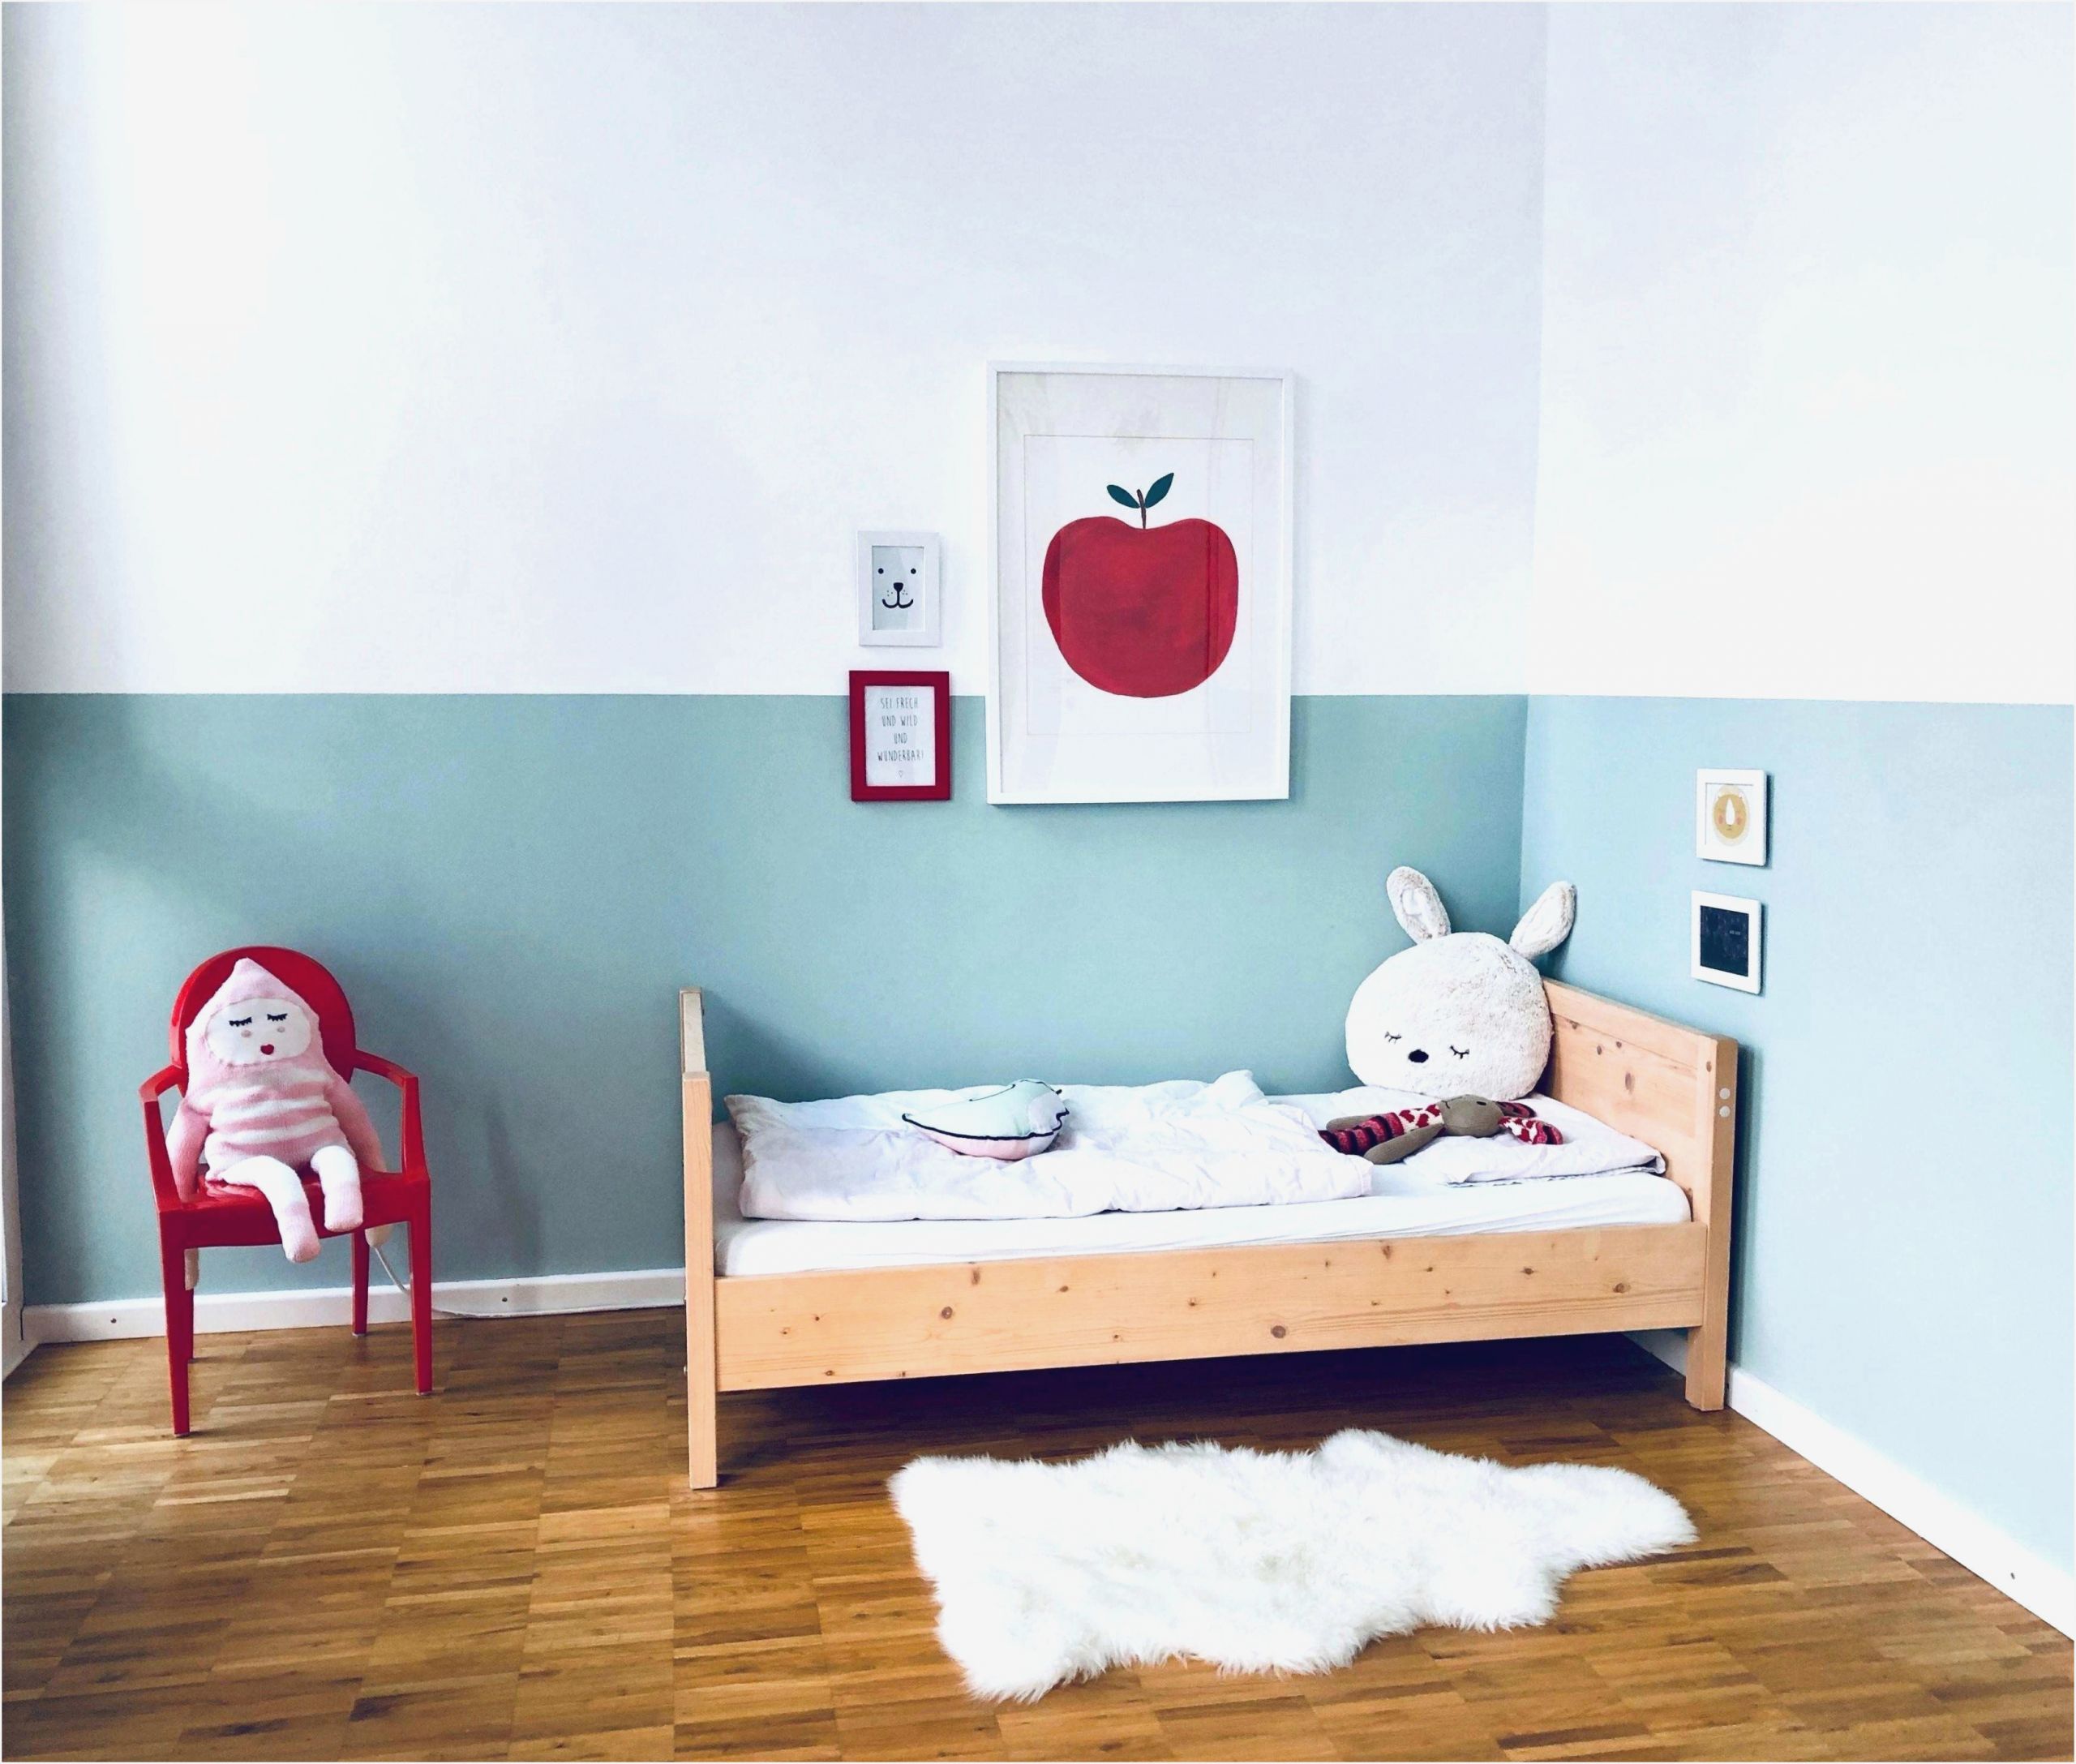 Holzkiste Bemalen Ideen Elegant Kinderzimmer Sterne Wand Malen Kinderzimmer Traumhaus